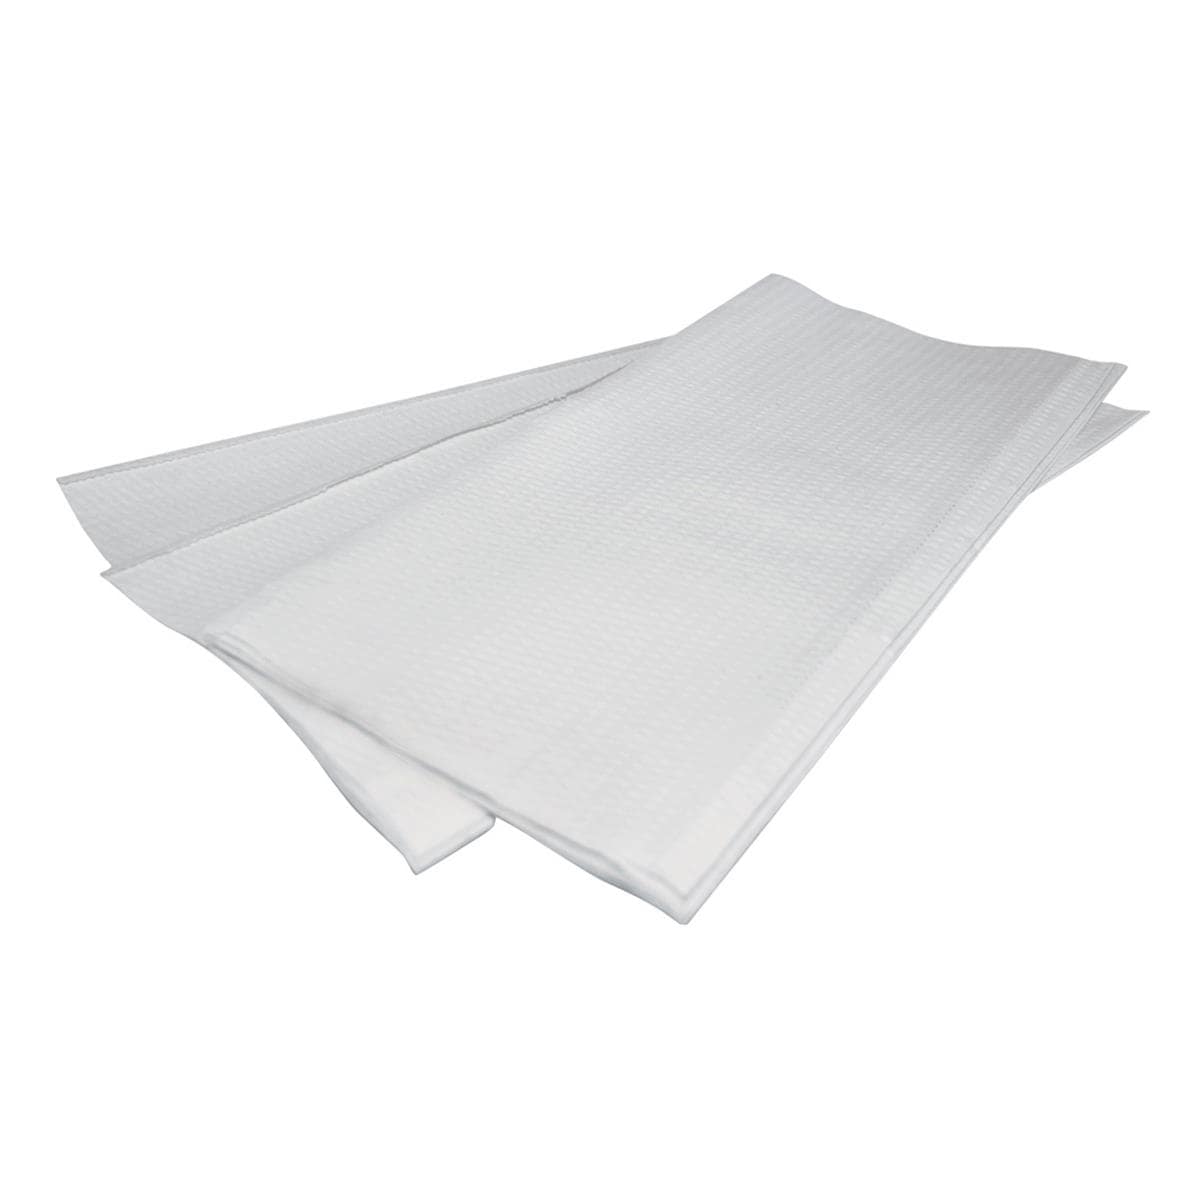 DEHP Z-Fold Towel 1-Ply Recycled White 23 x 25cm 5000pcs (20 x 250pk)